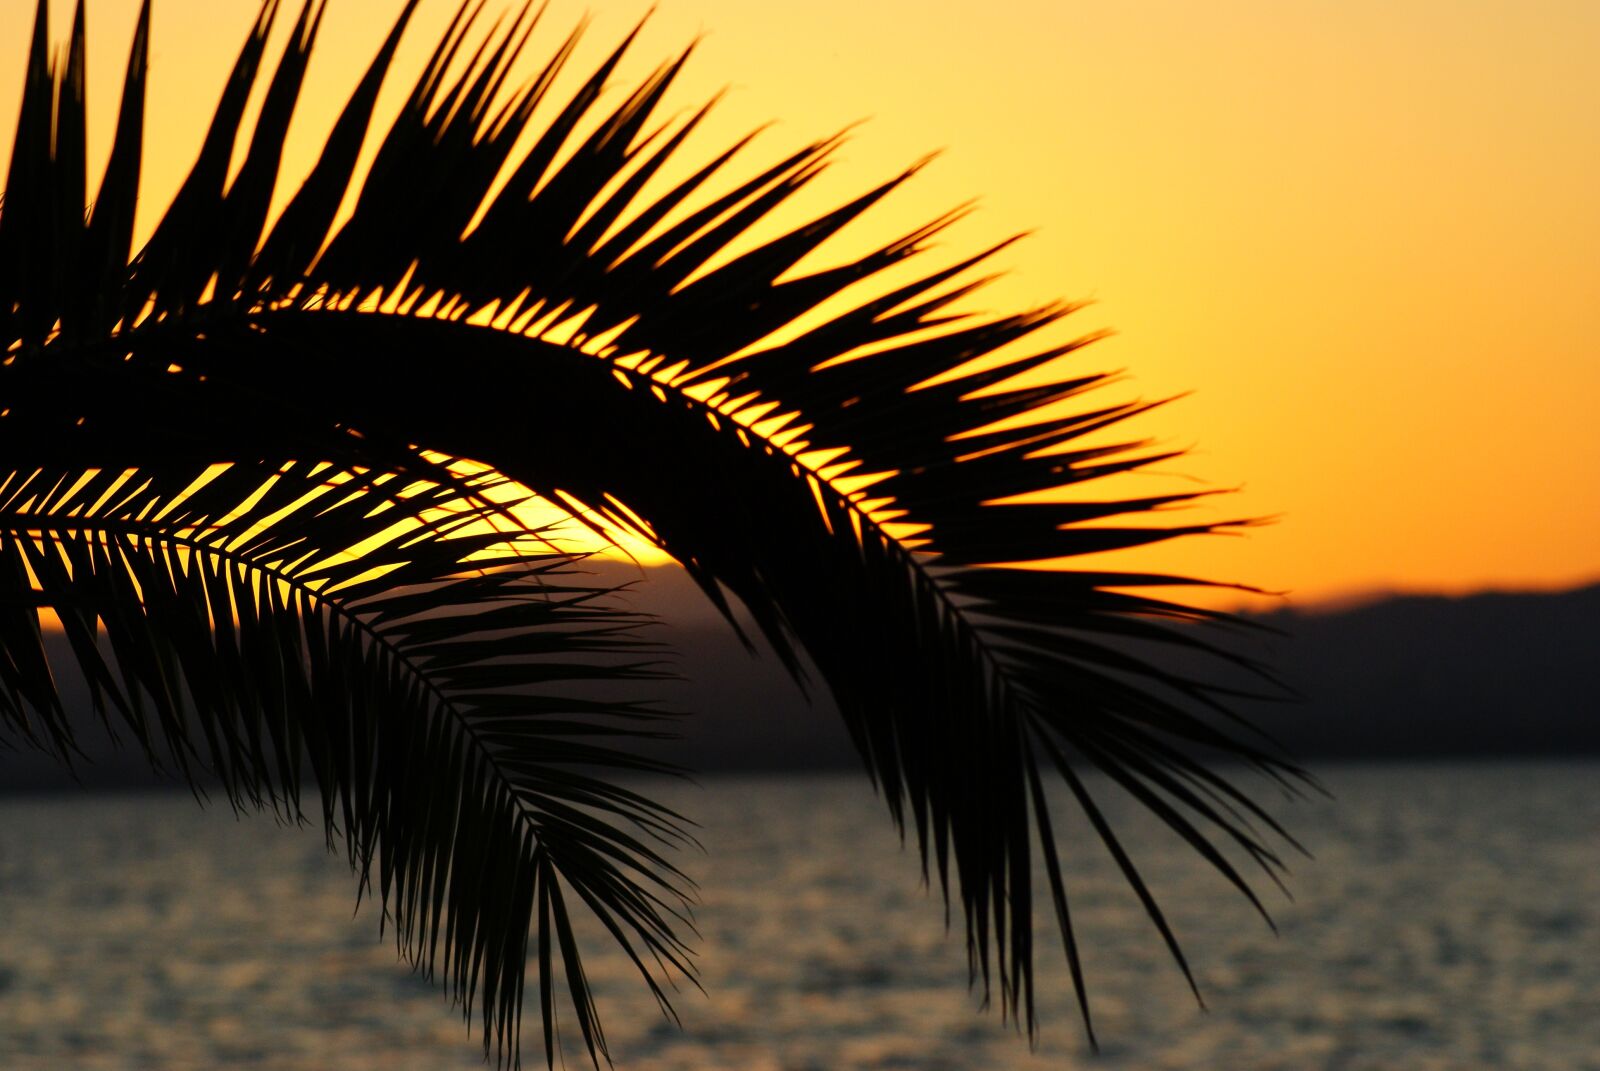 Sony Alpha DSLR-A230 sample photo. Sunset, palm, abendstimmung photography